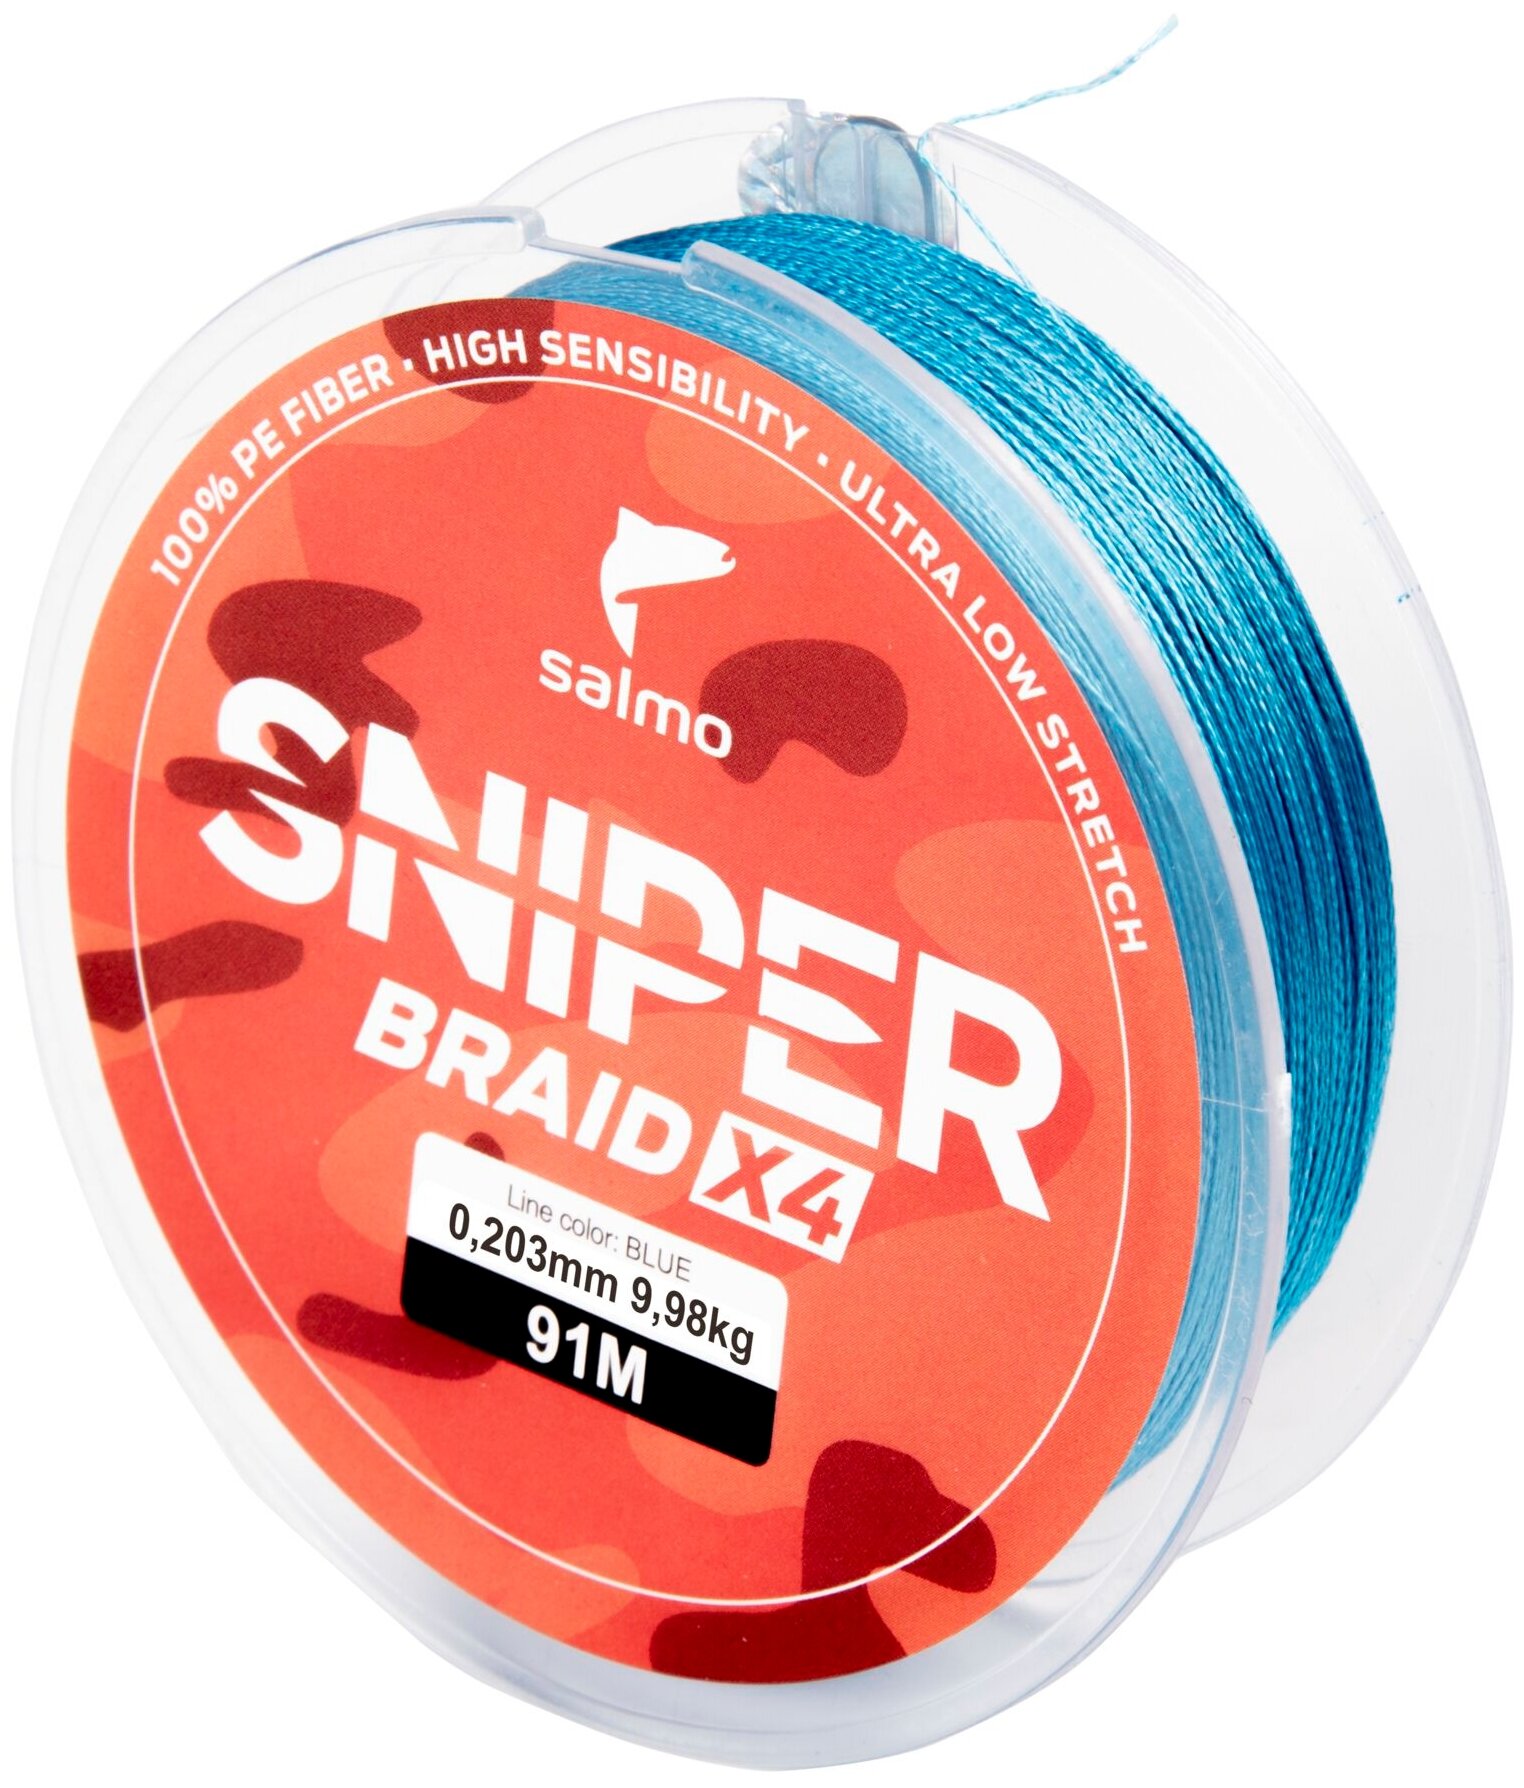 Плетеный шнур Salmo Sniper Braid 4X